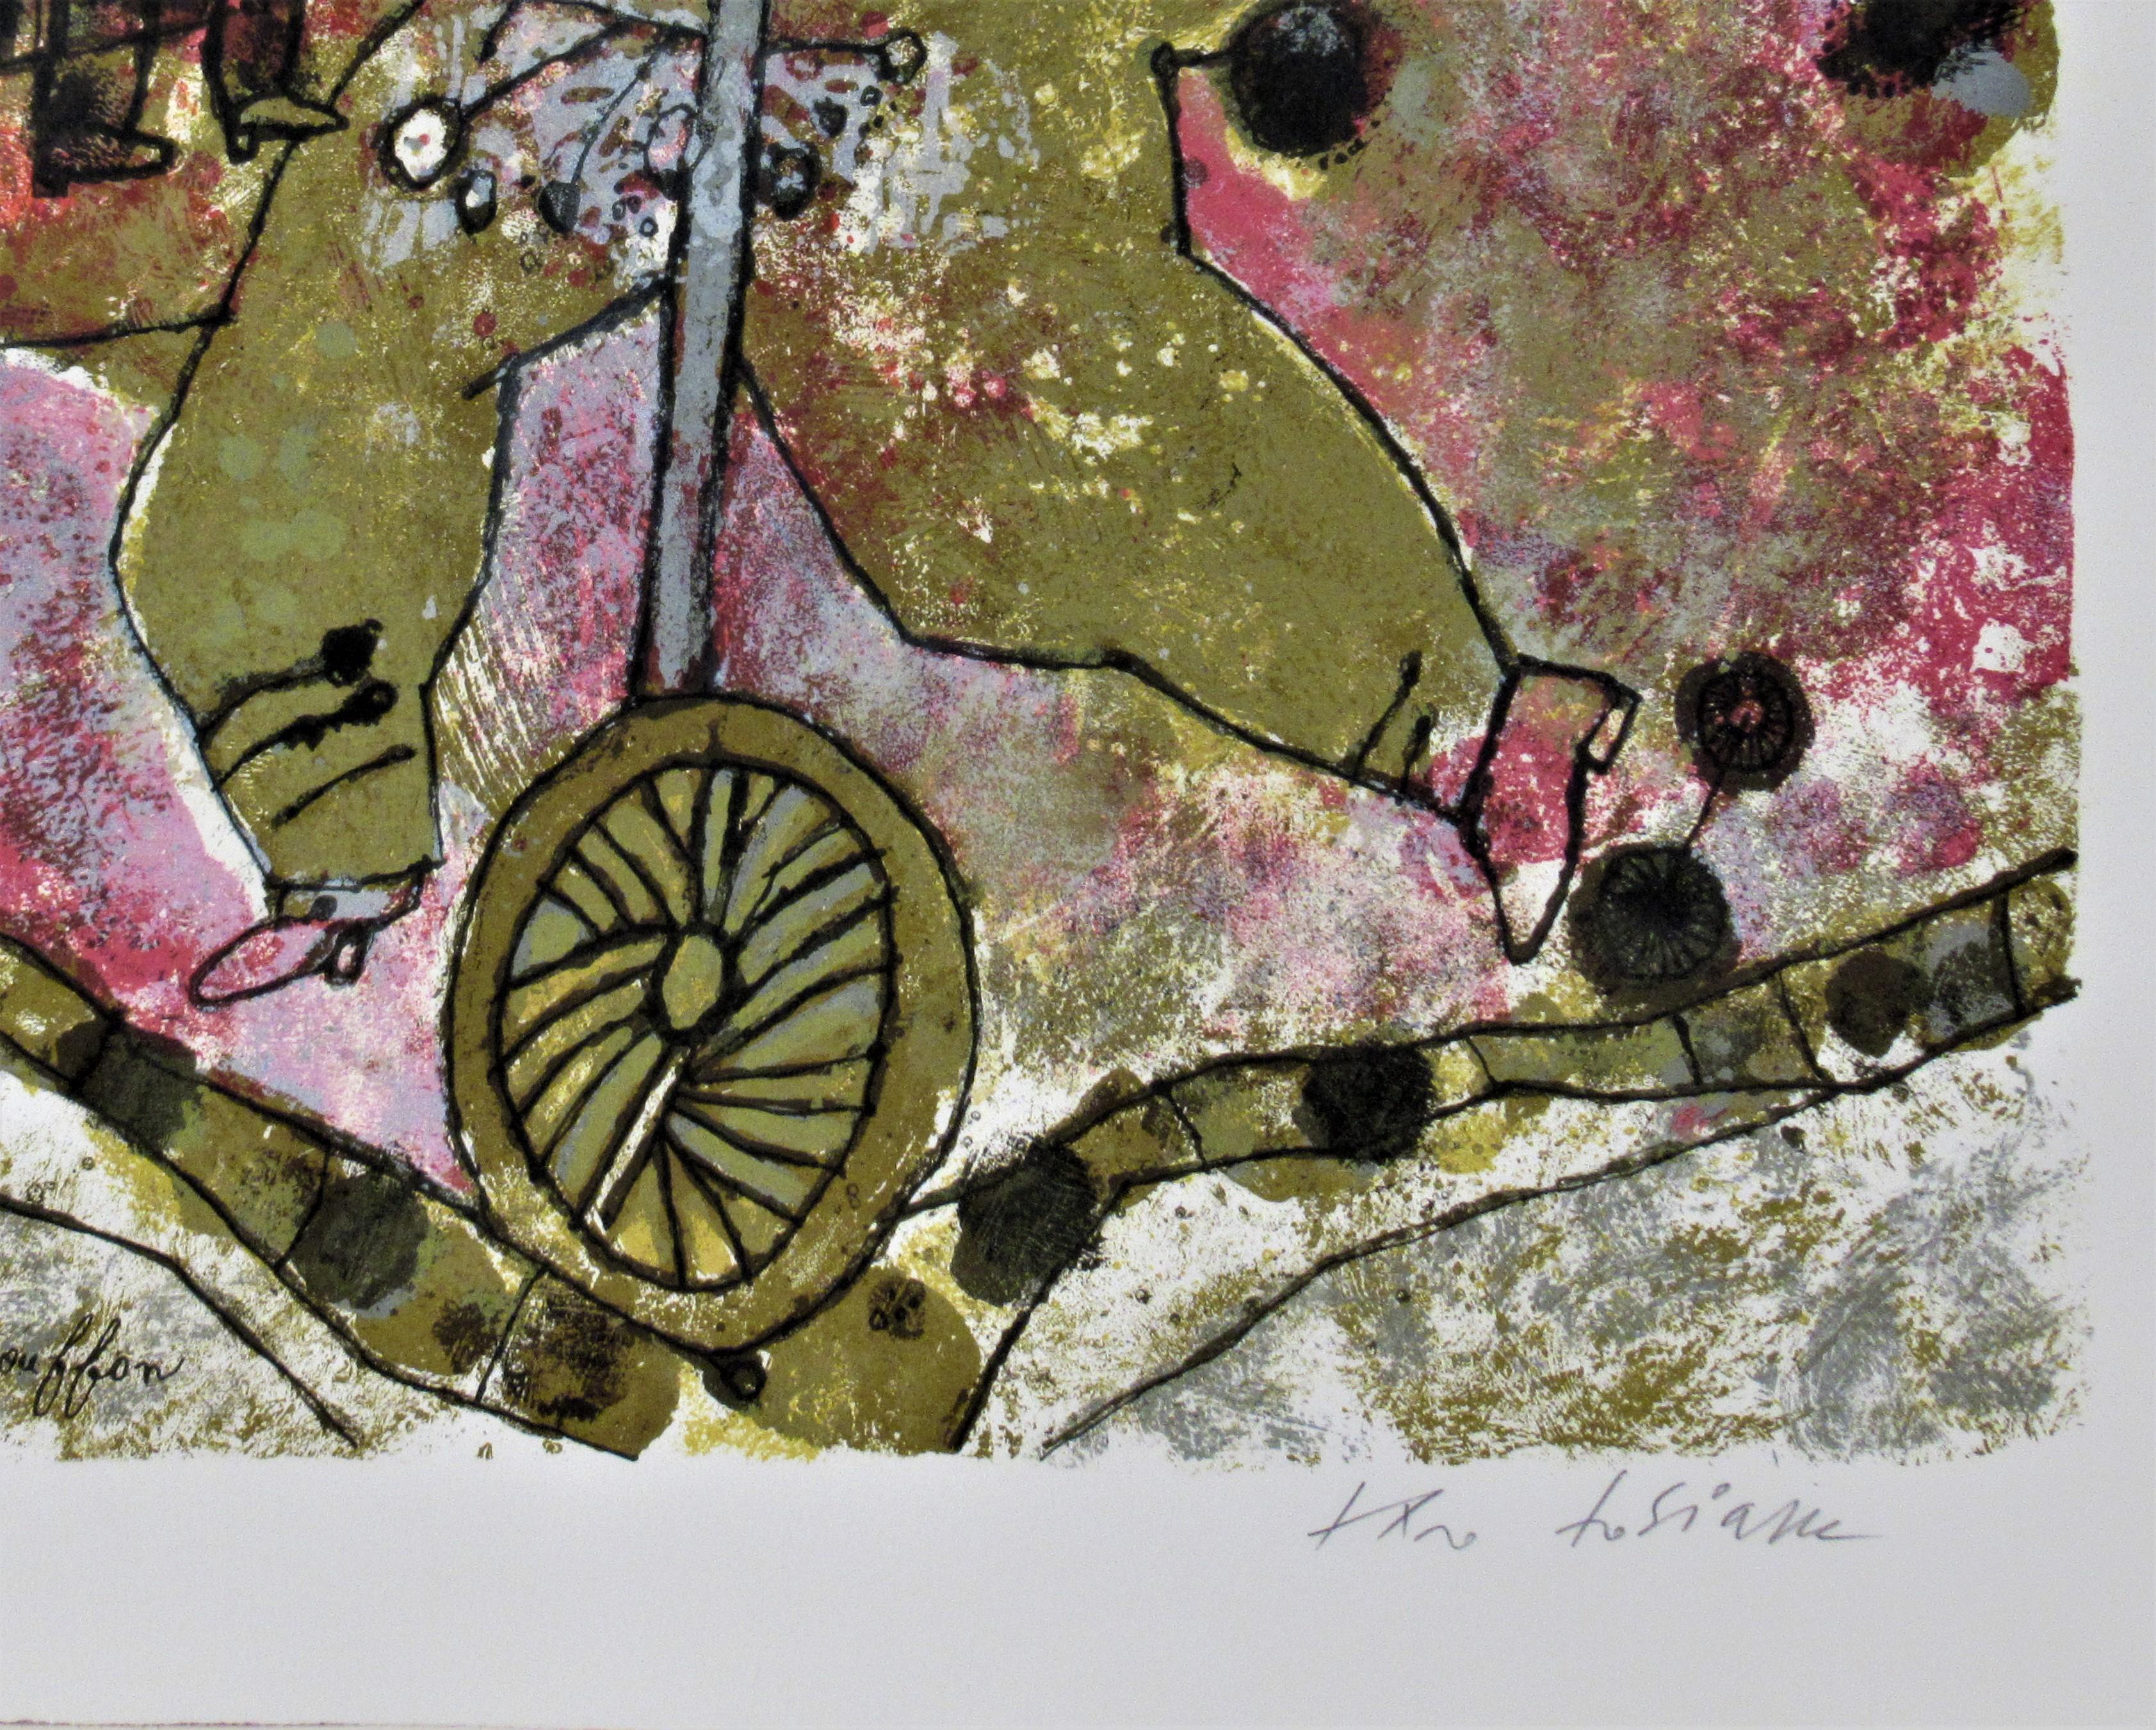 Artiste :   Theo Tobiasse (français/israélien, 1927-2012)
Titre :   La Princesse et le Bouffon
Année :   1978
Moyen :	Lithographie couleur
Edition :	Numéroté 60/175 au crayon
Papier :	Vélin
Taille de l'image :   26.5 x 19.35 pouces
format de papier